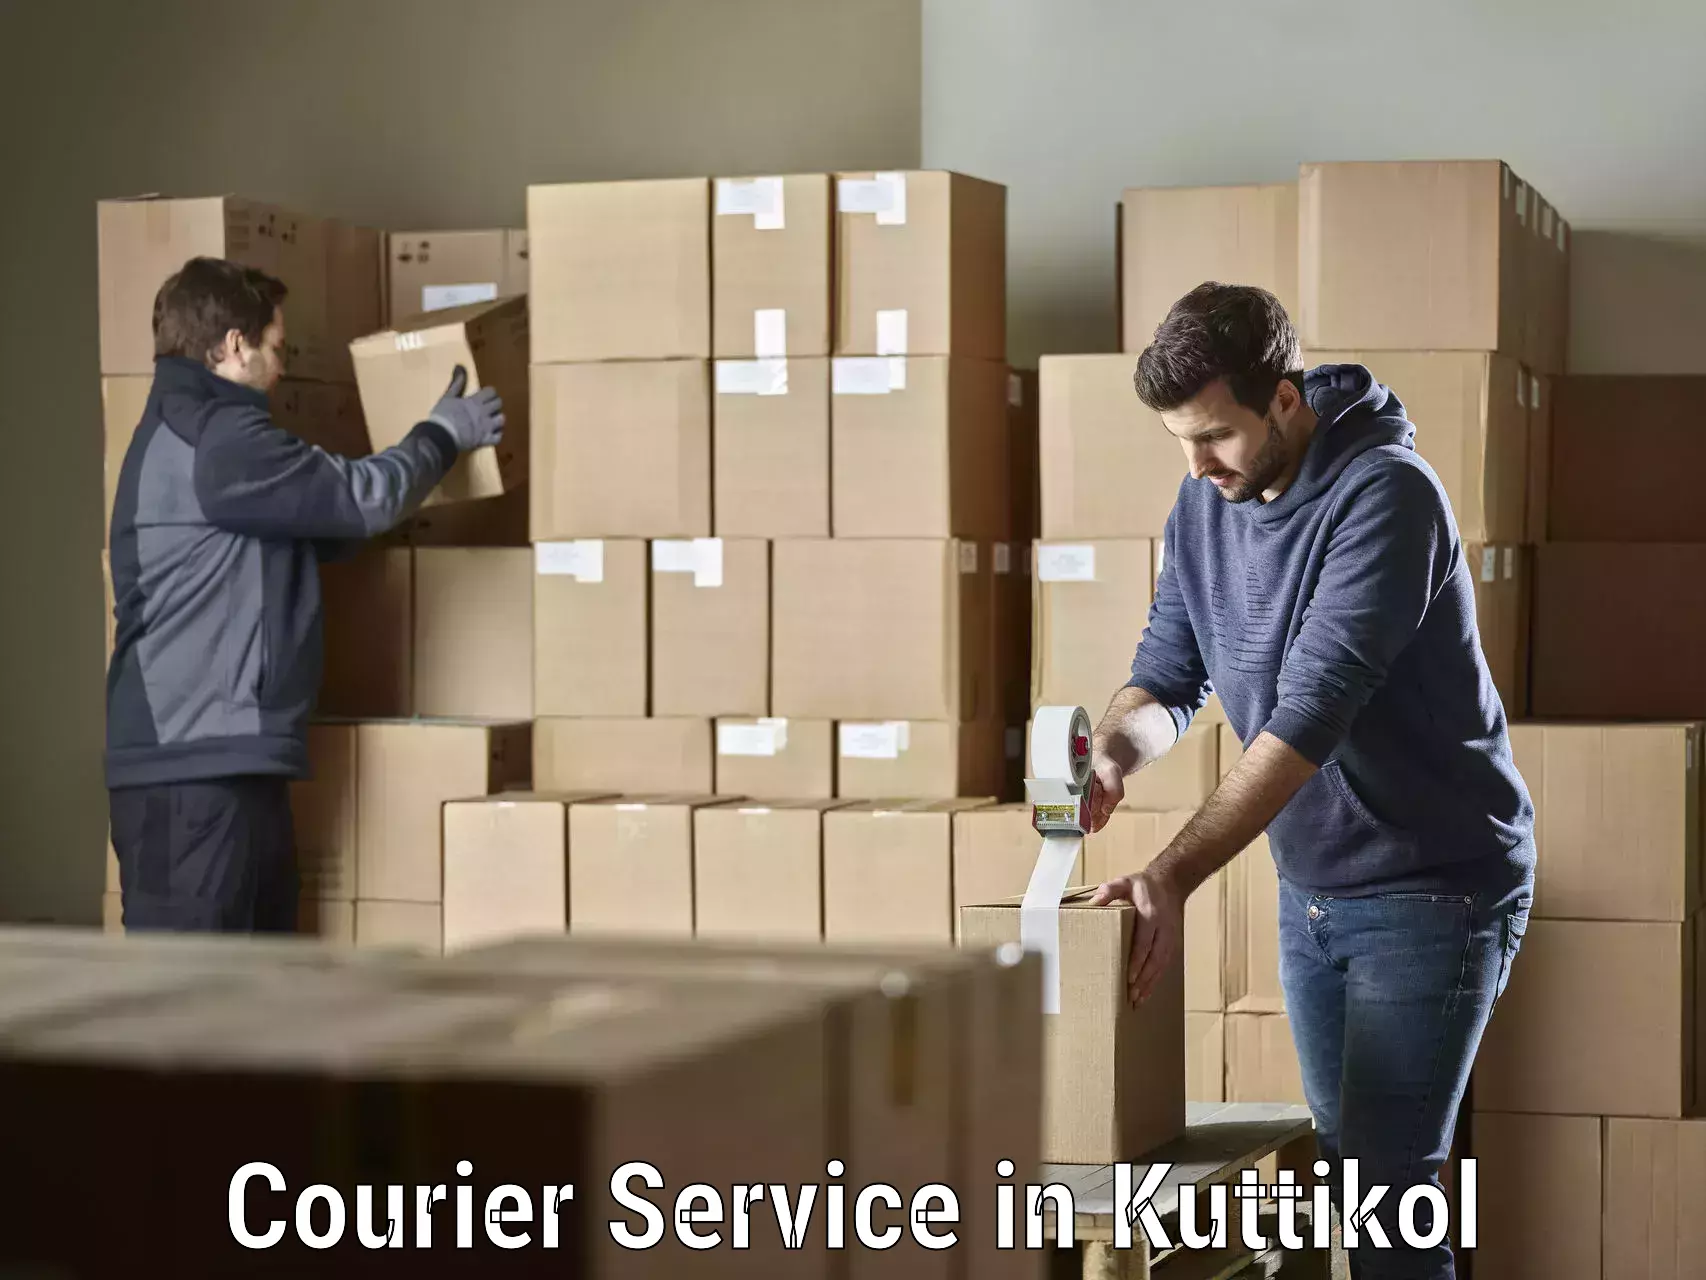 Innovative logistics solutions in Kuttikol